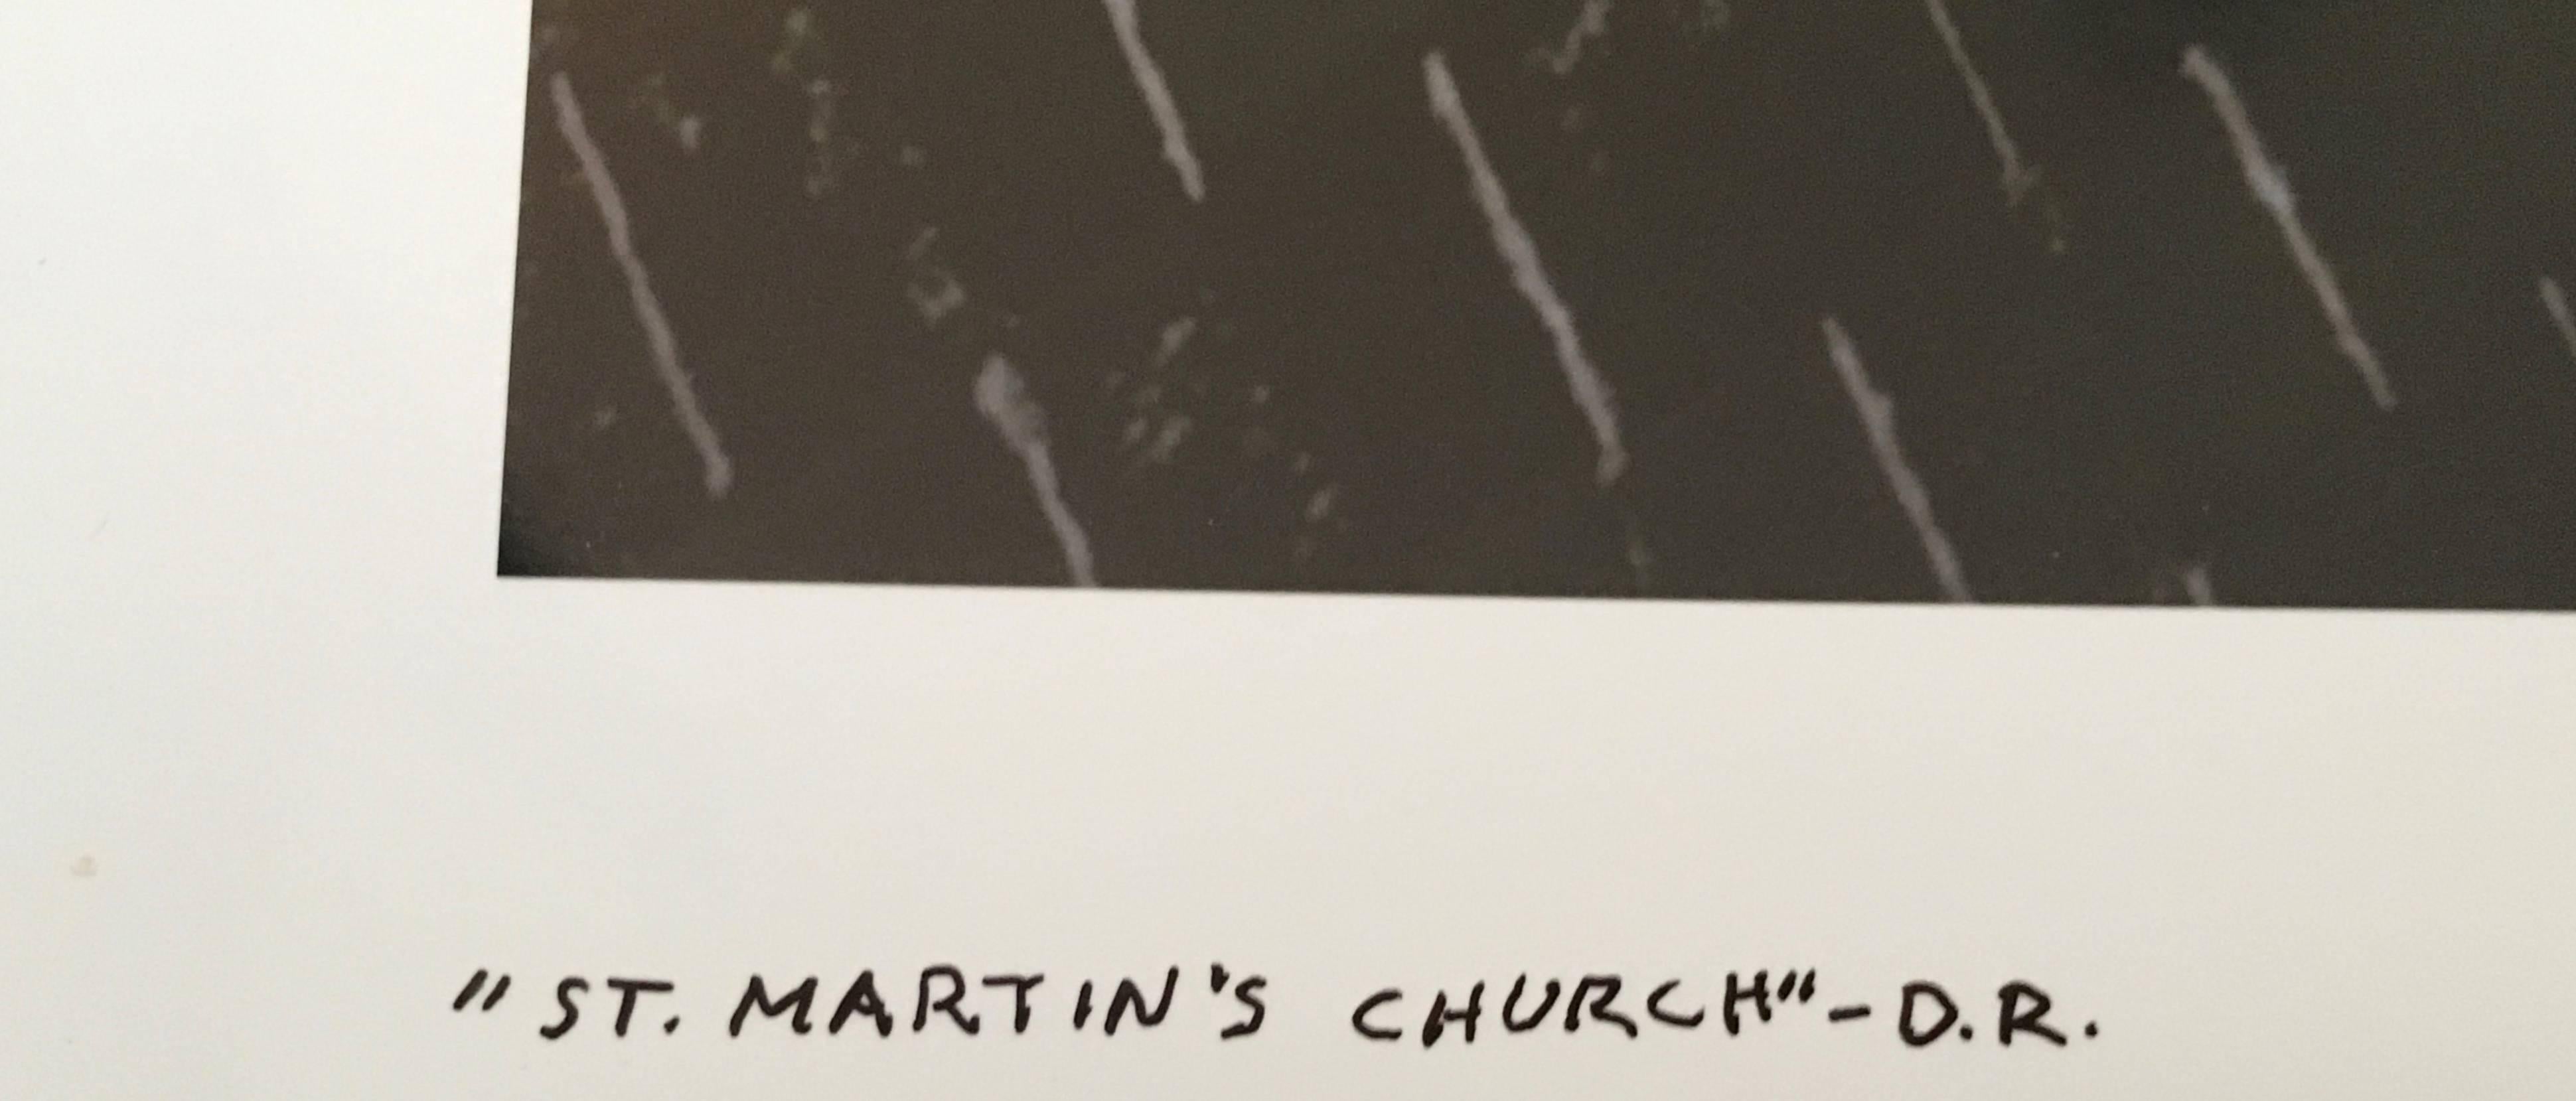 L'église St. Martin's, photographie couleur à grande échelle - Photograph de Jay Wolke